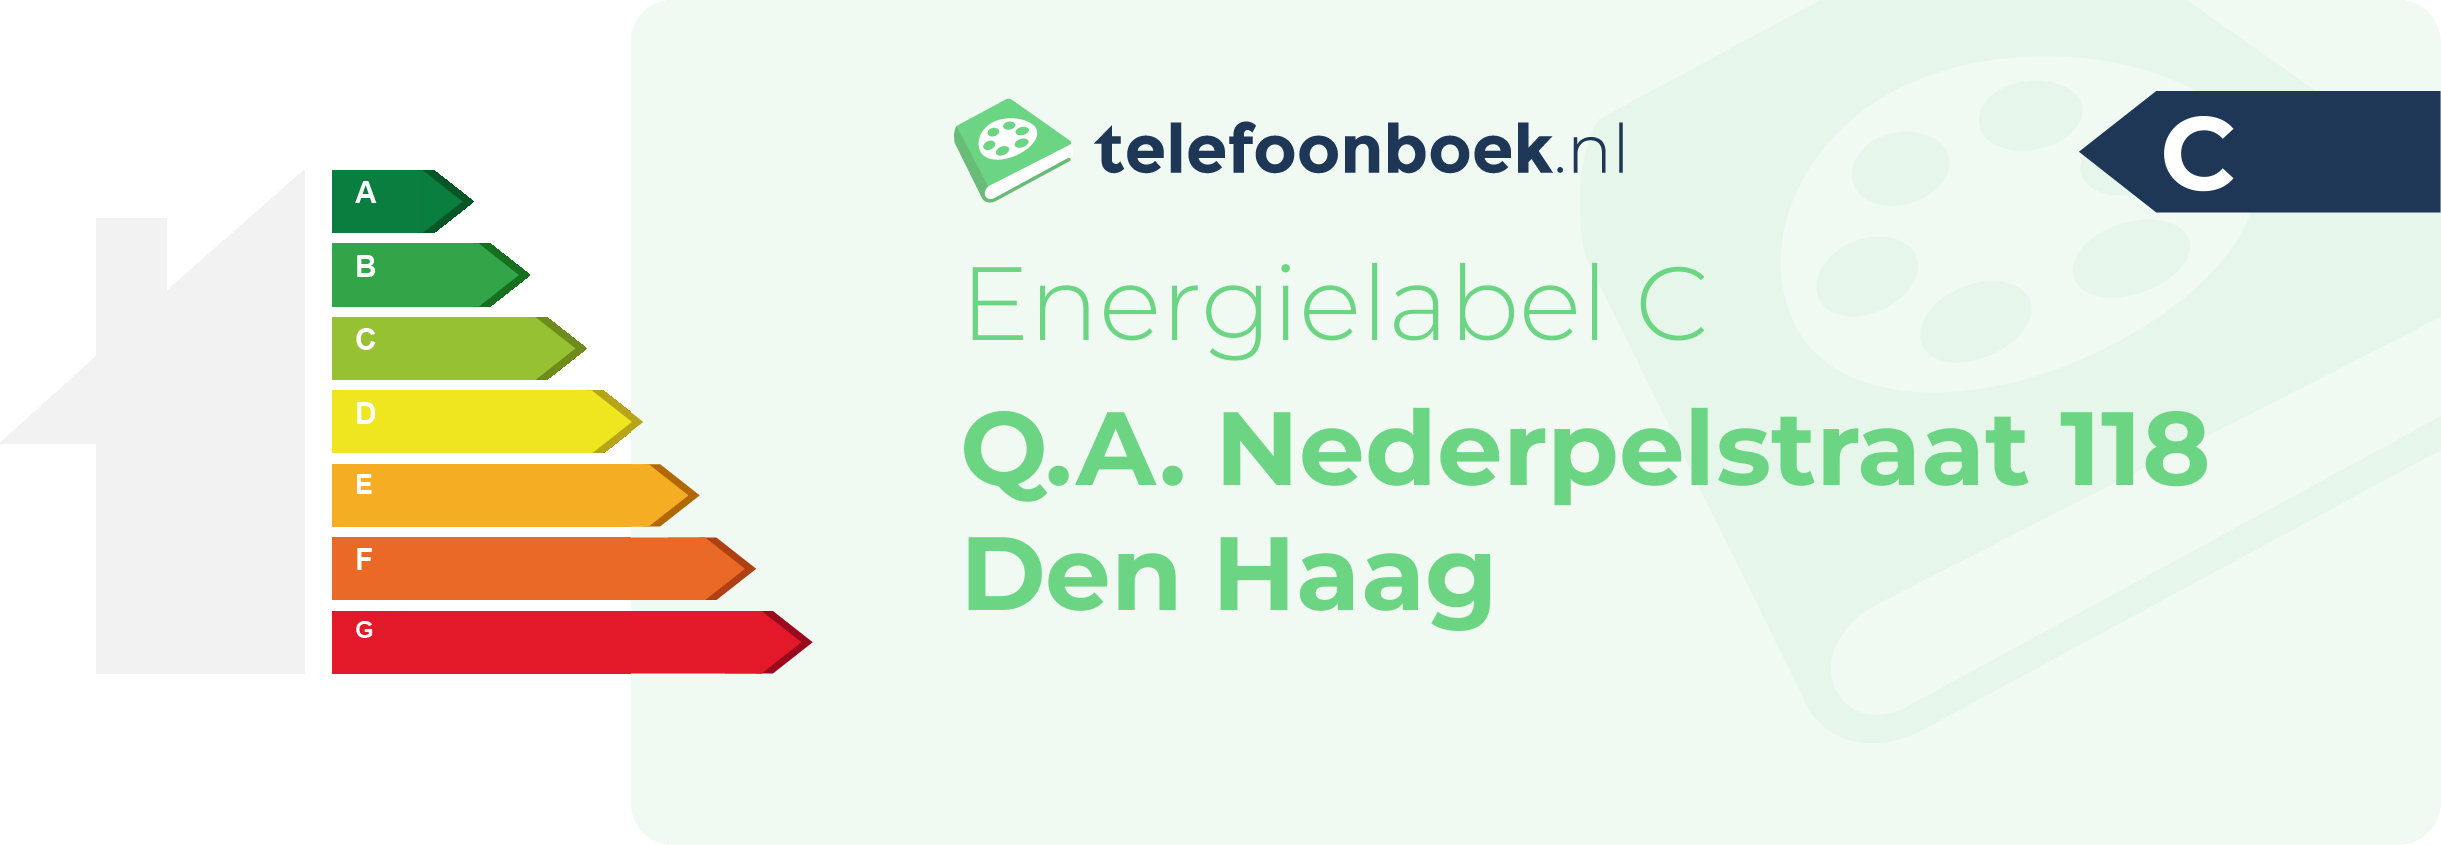 Energielabel Q.A. Nederpelstraat 118 Den Haag